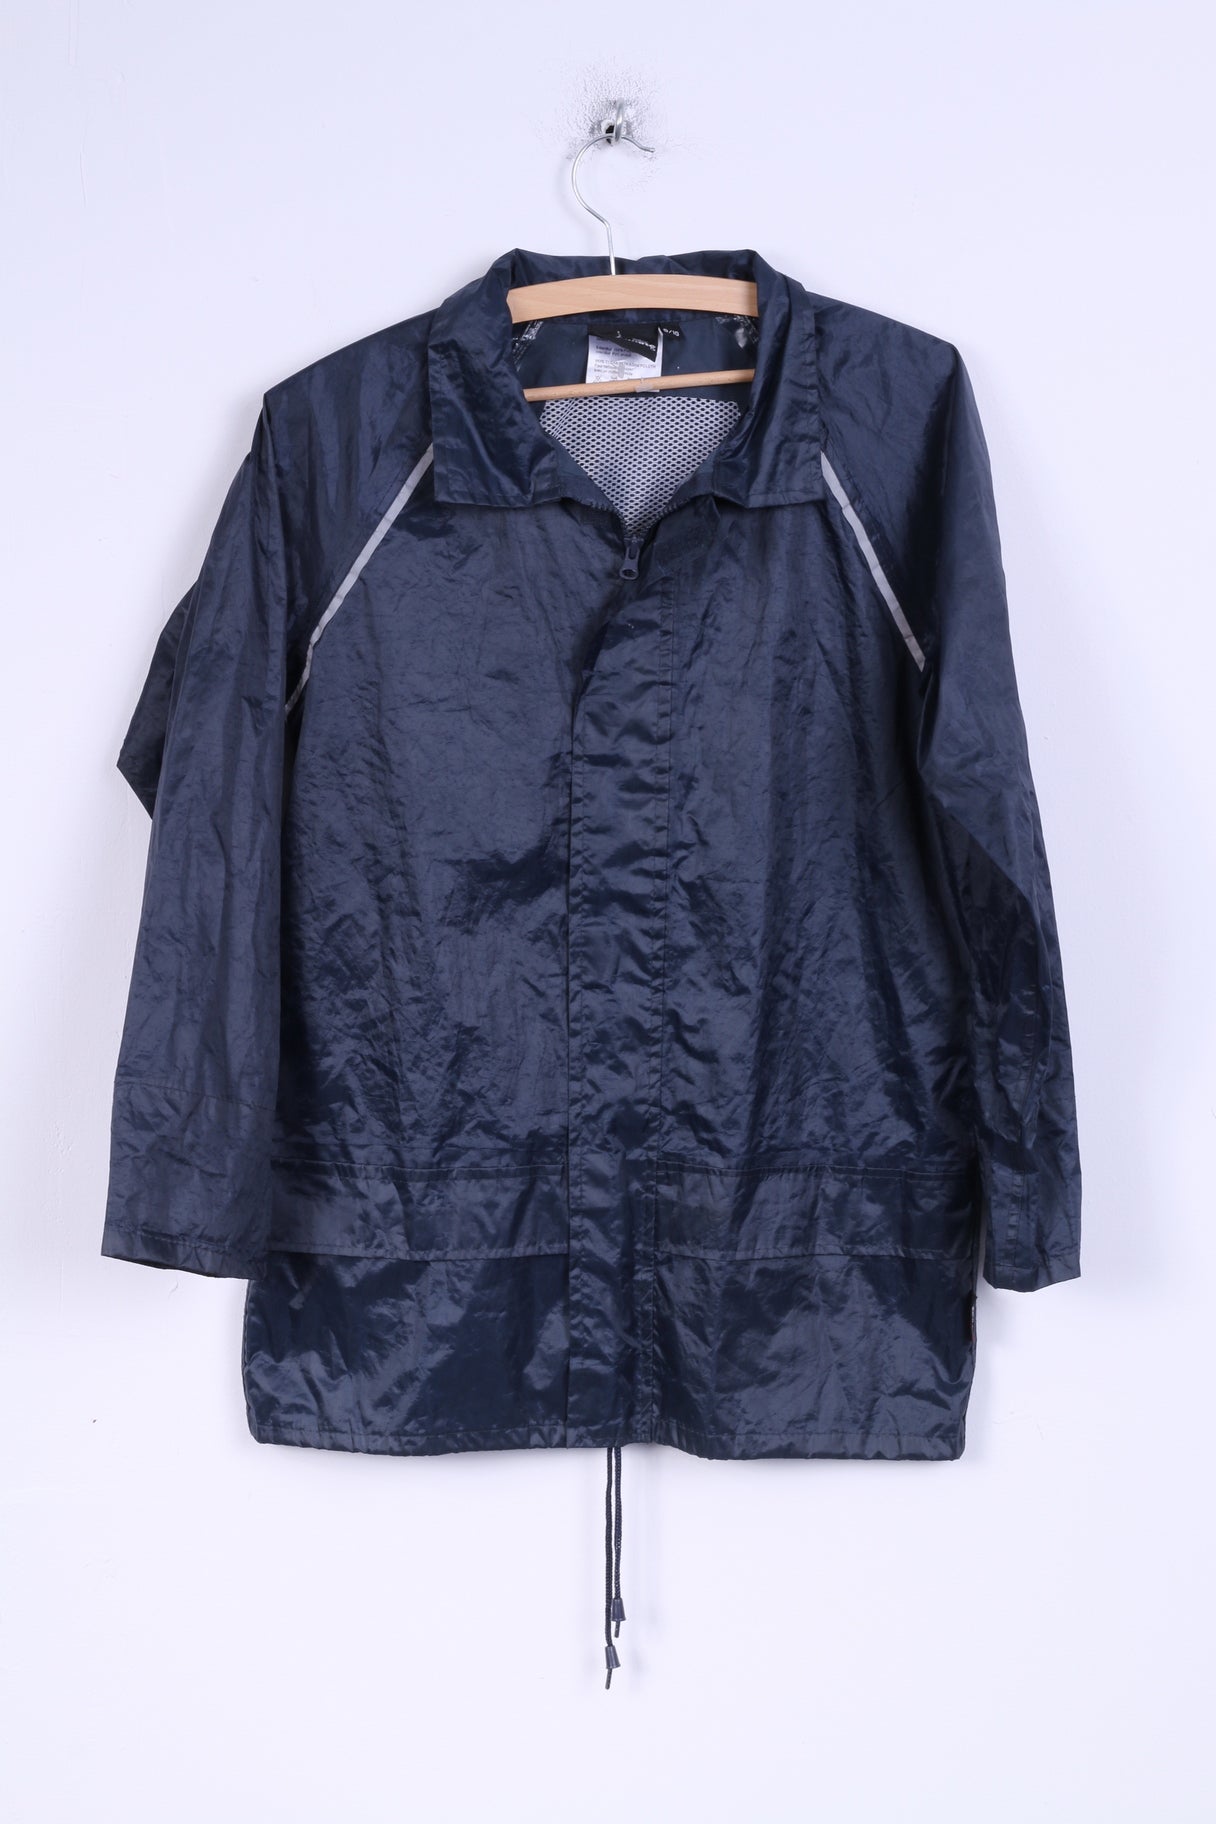 Veste de pluie ProClimate pour garçons de 9/10 ans, haut léger à fermeture éclair complète, bleu marine